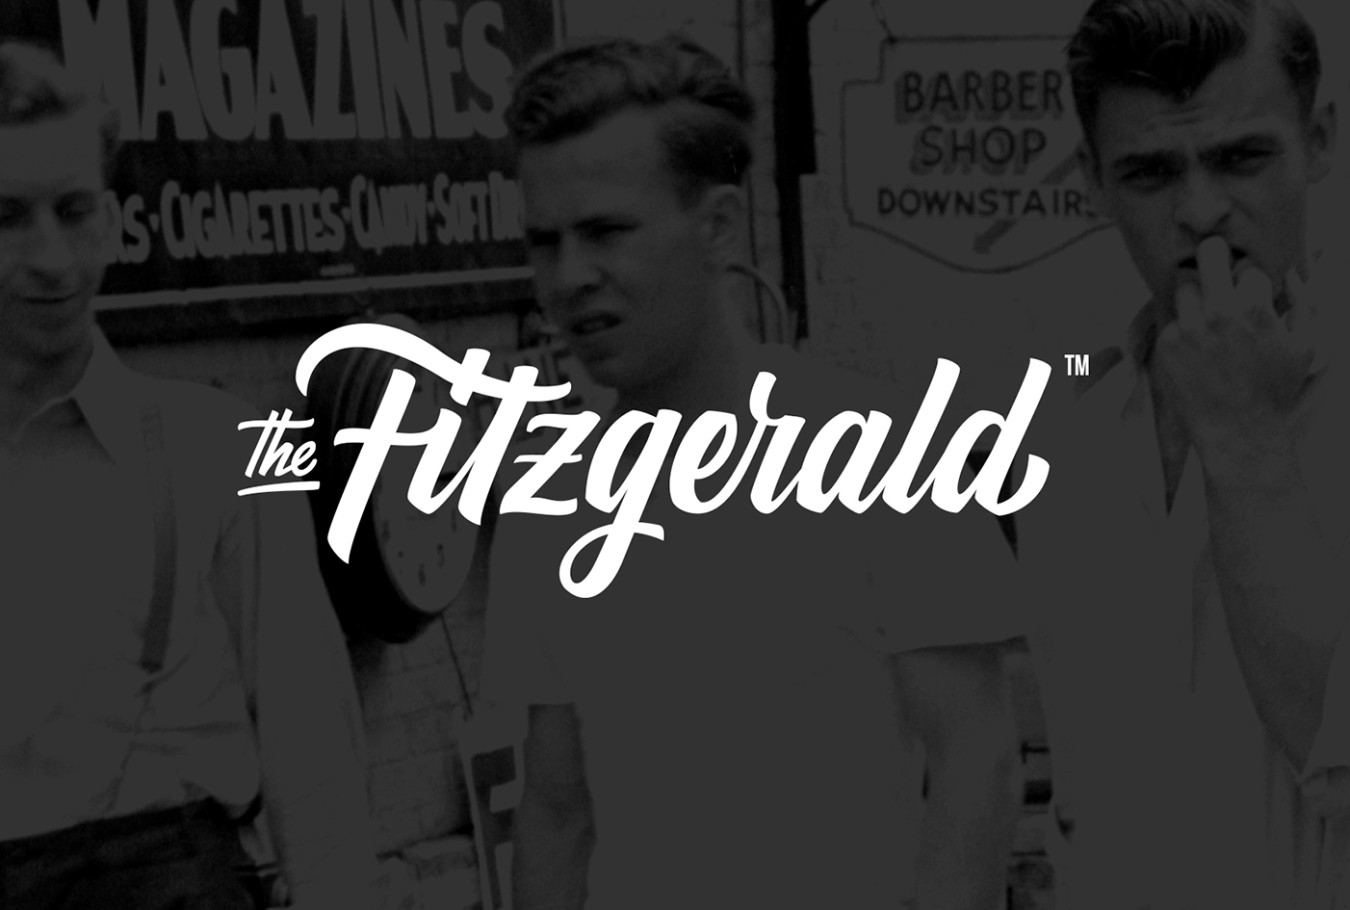 Diseño de identidad corporativa restaurante The Fitzgerald - Estudio de diseño en Valencia Pixelarte